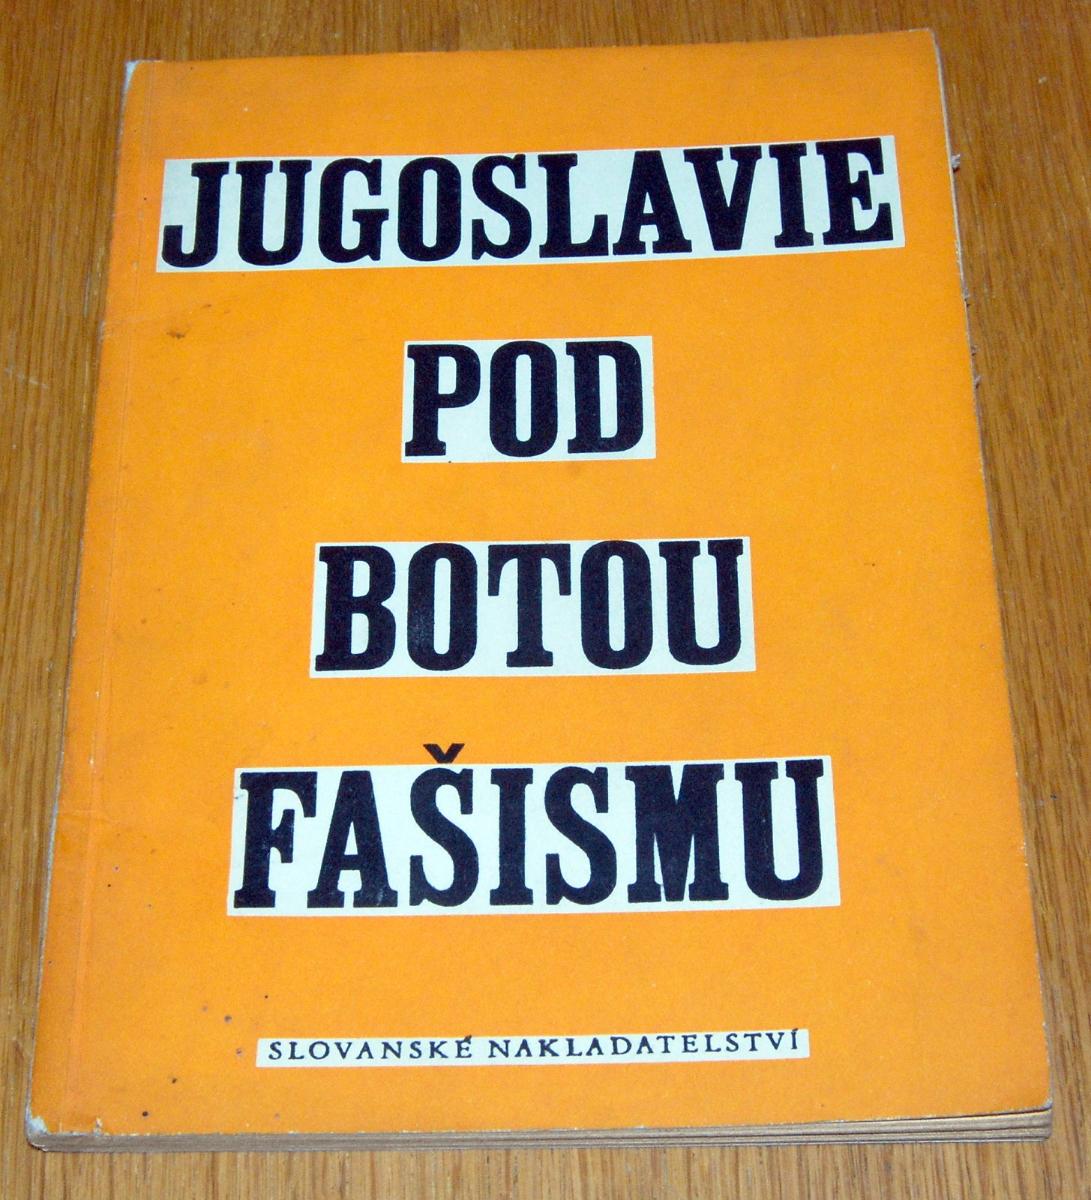 JUGOSLAVIA POD BOTOU FAŠIZMU Slovanskej nakl. 1949 - Knihy